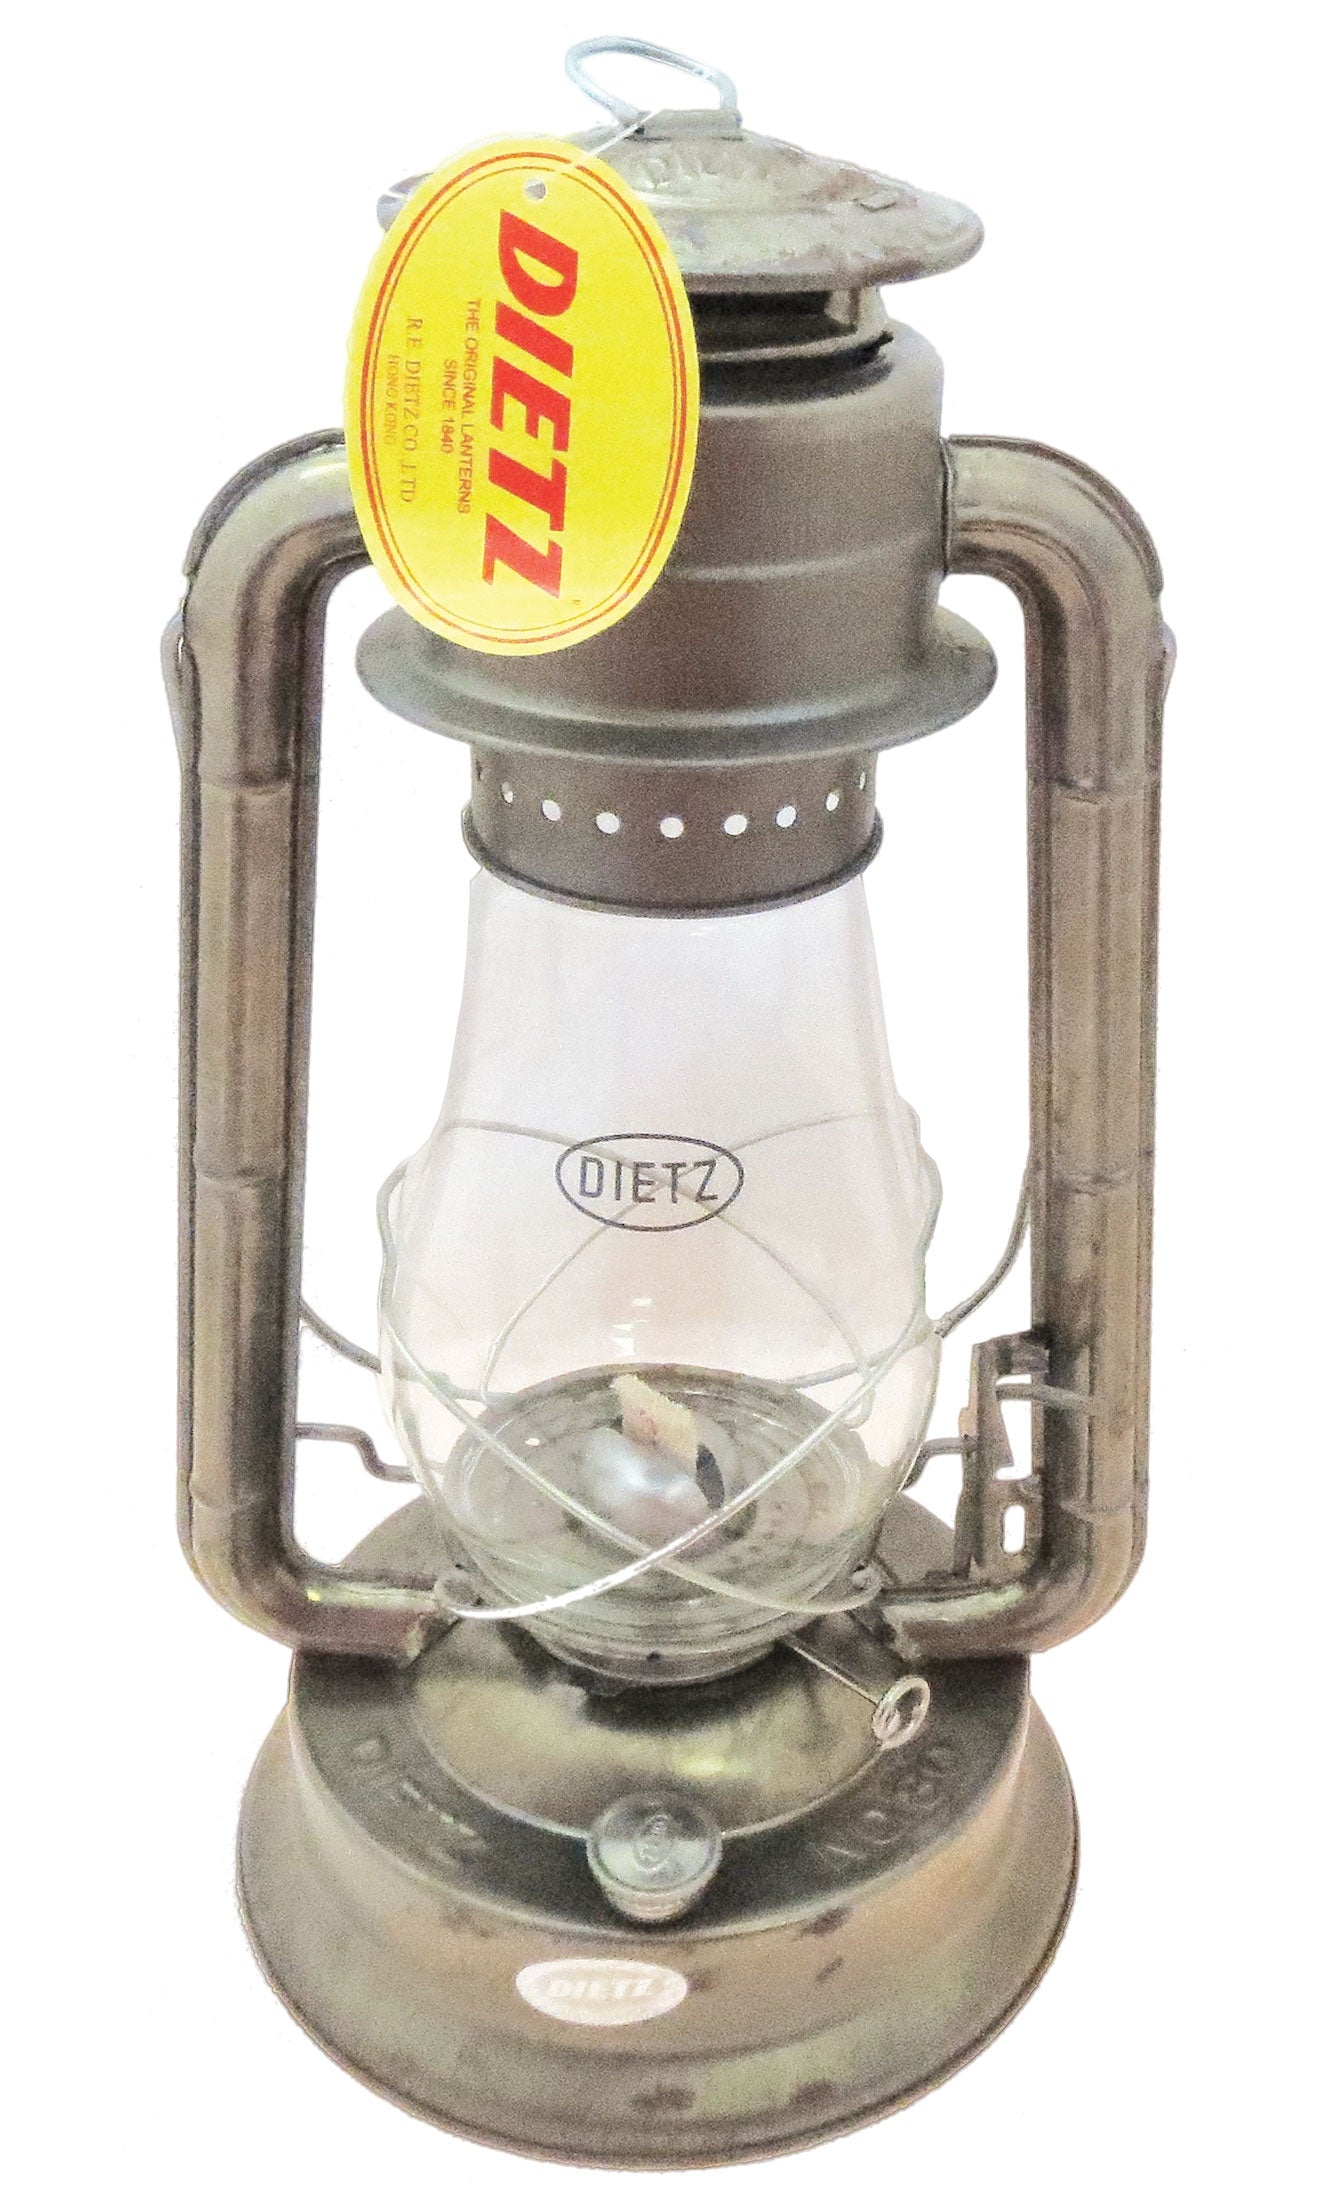 Dietz No. 80 Hurricane Lantern